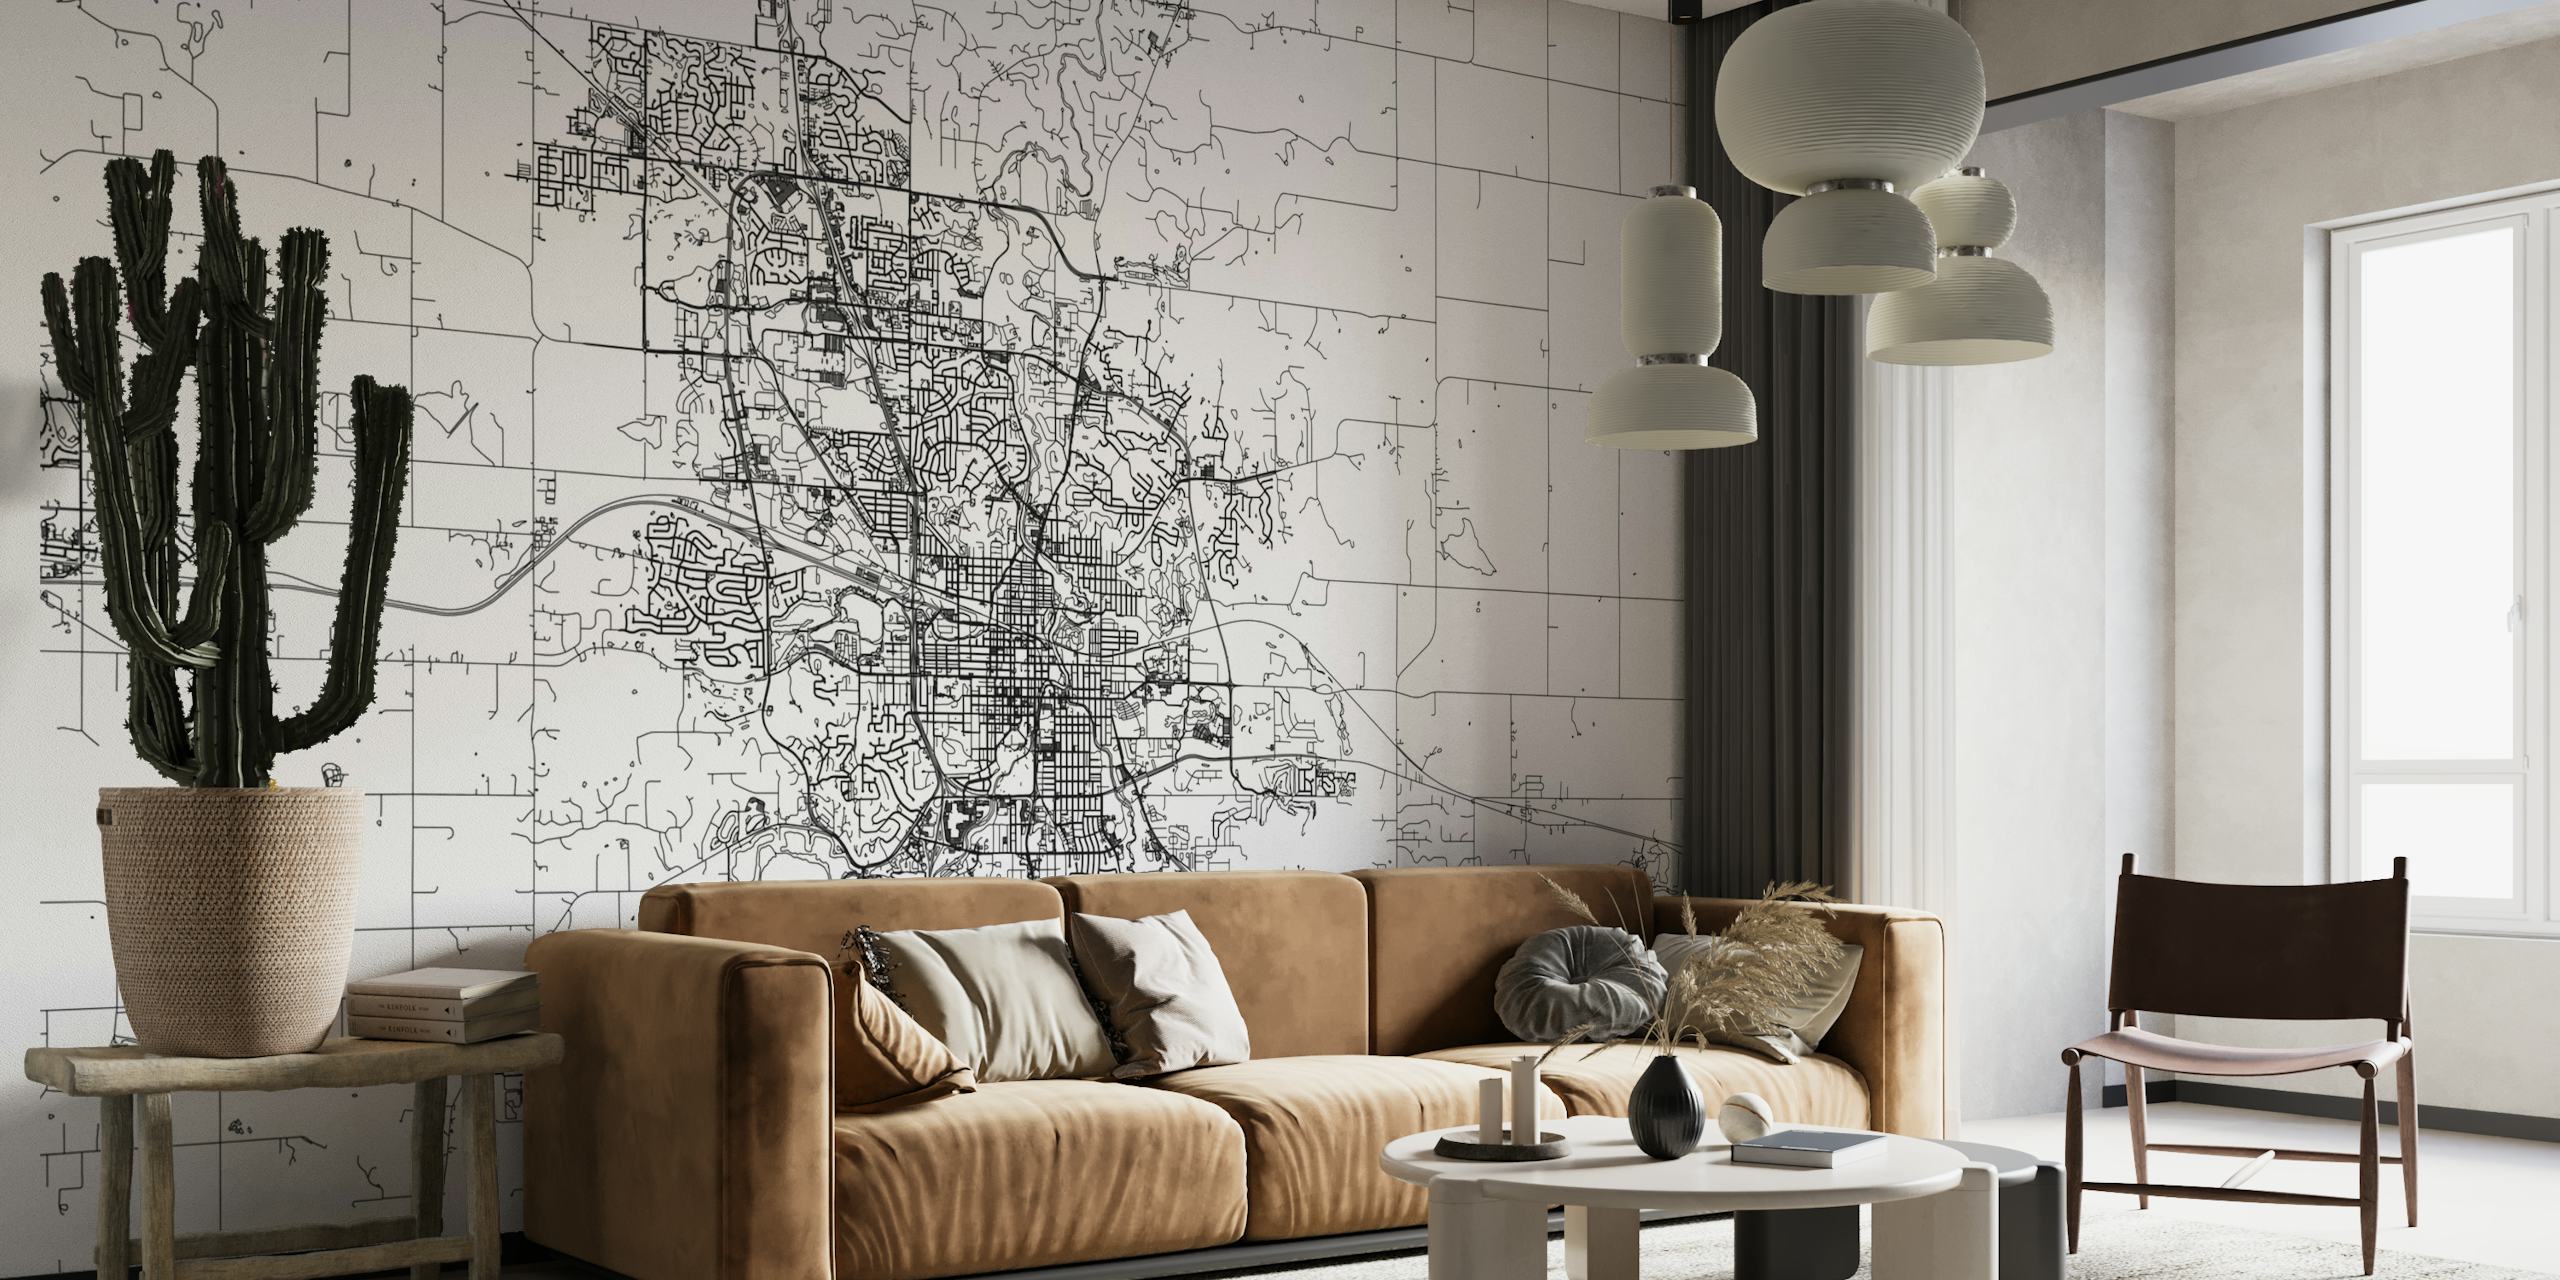 Crno-bijela detaljna karta ulica Rochester zidne slike